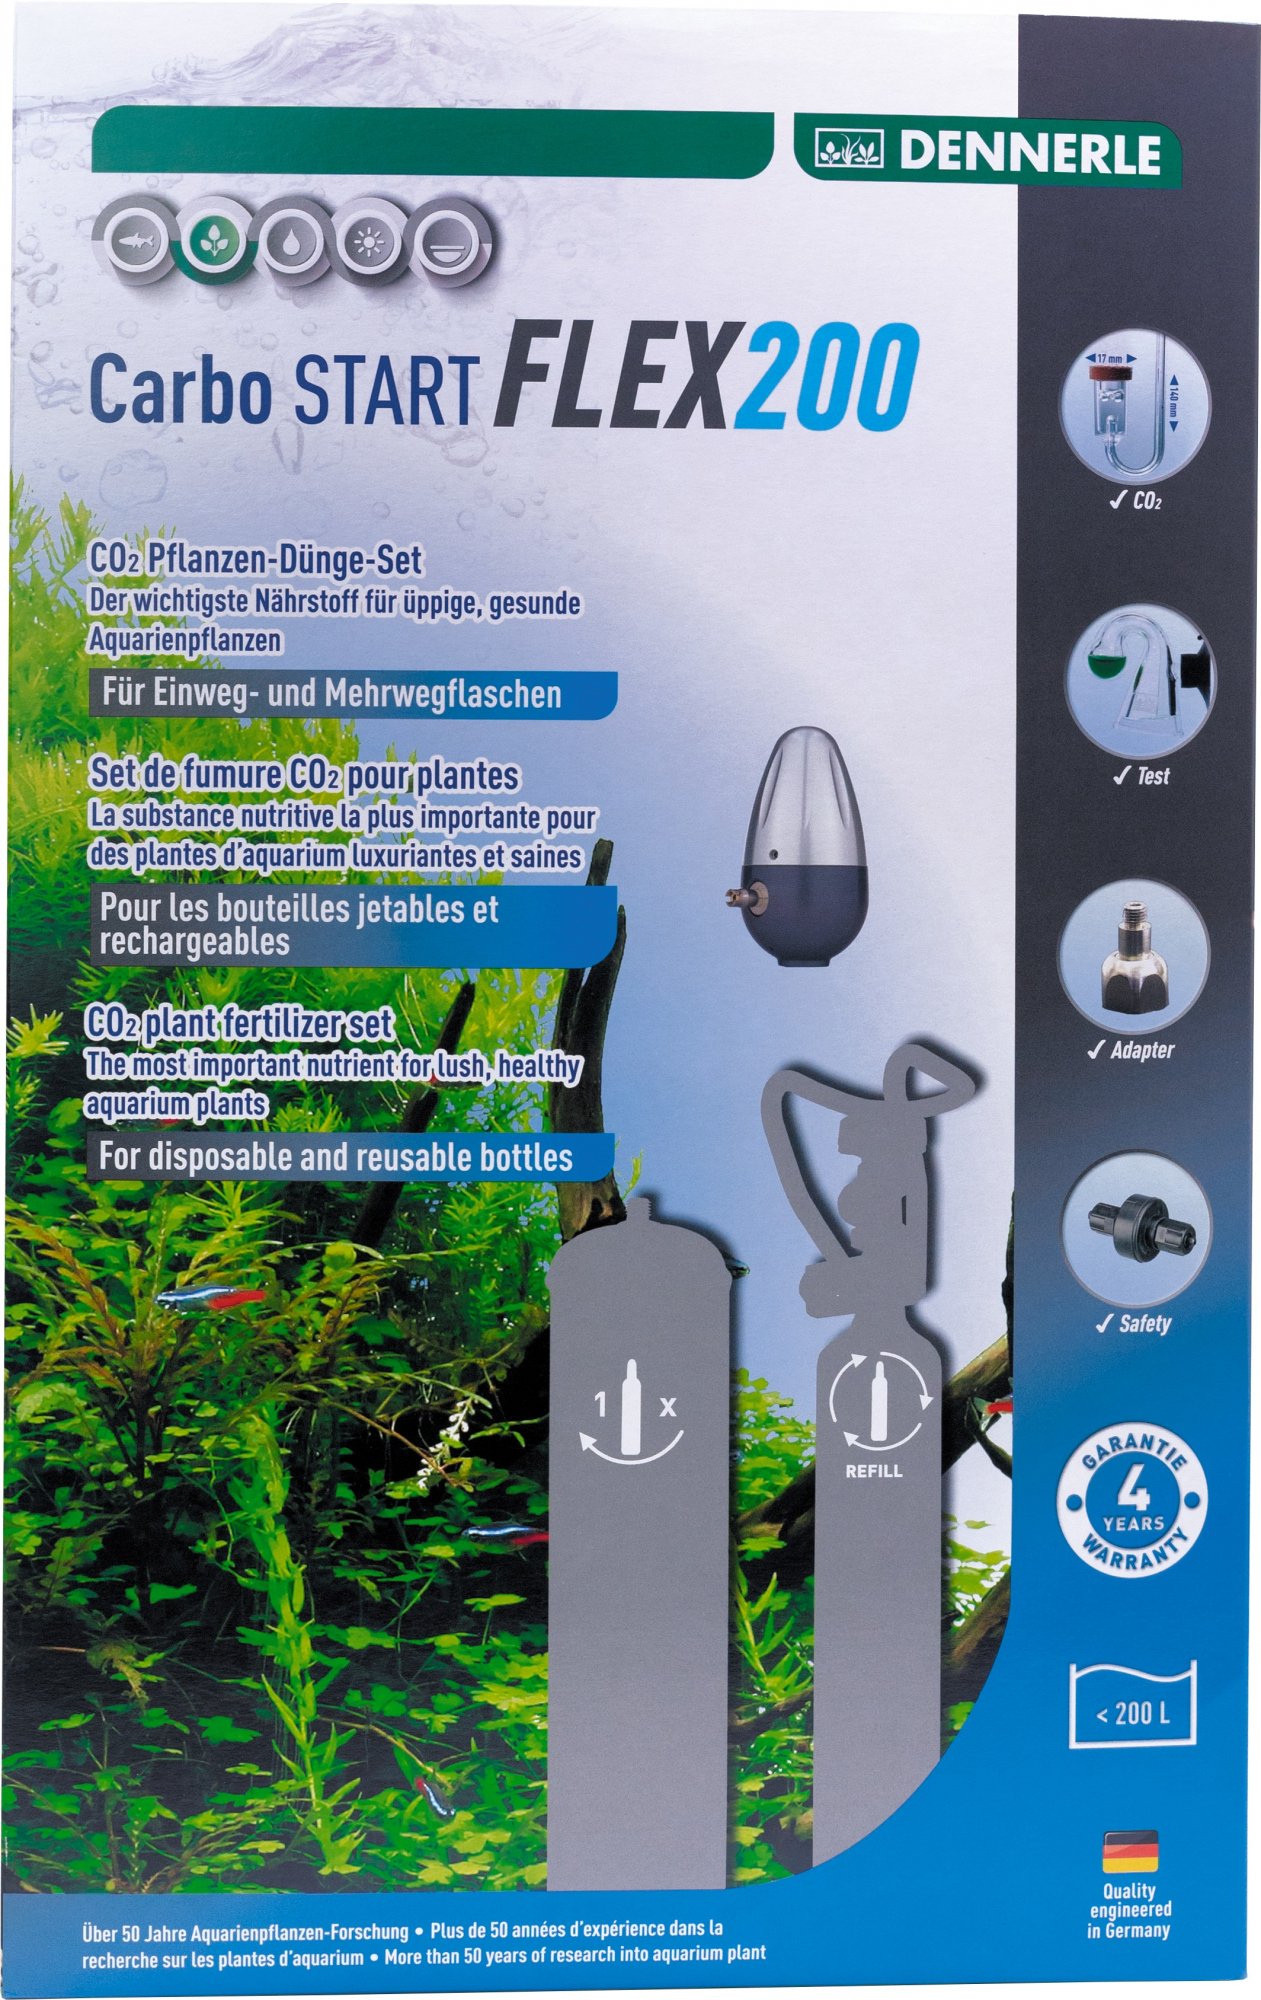 Dennerle Kit de Co2 Carbo start Flex 200 y flex 200 Edición especial para botellas desechables y rellenables